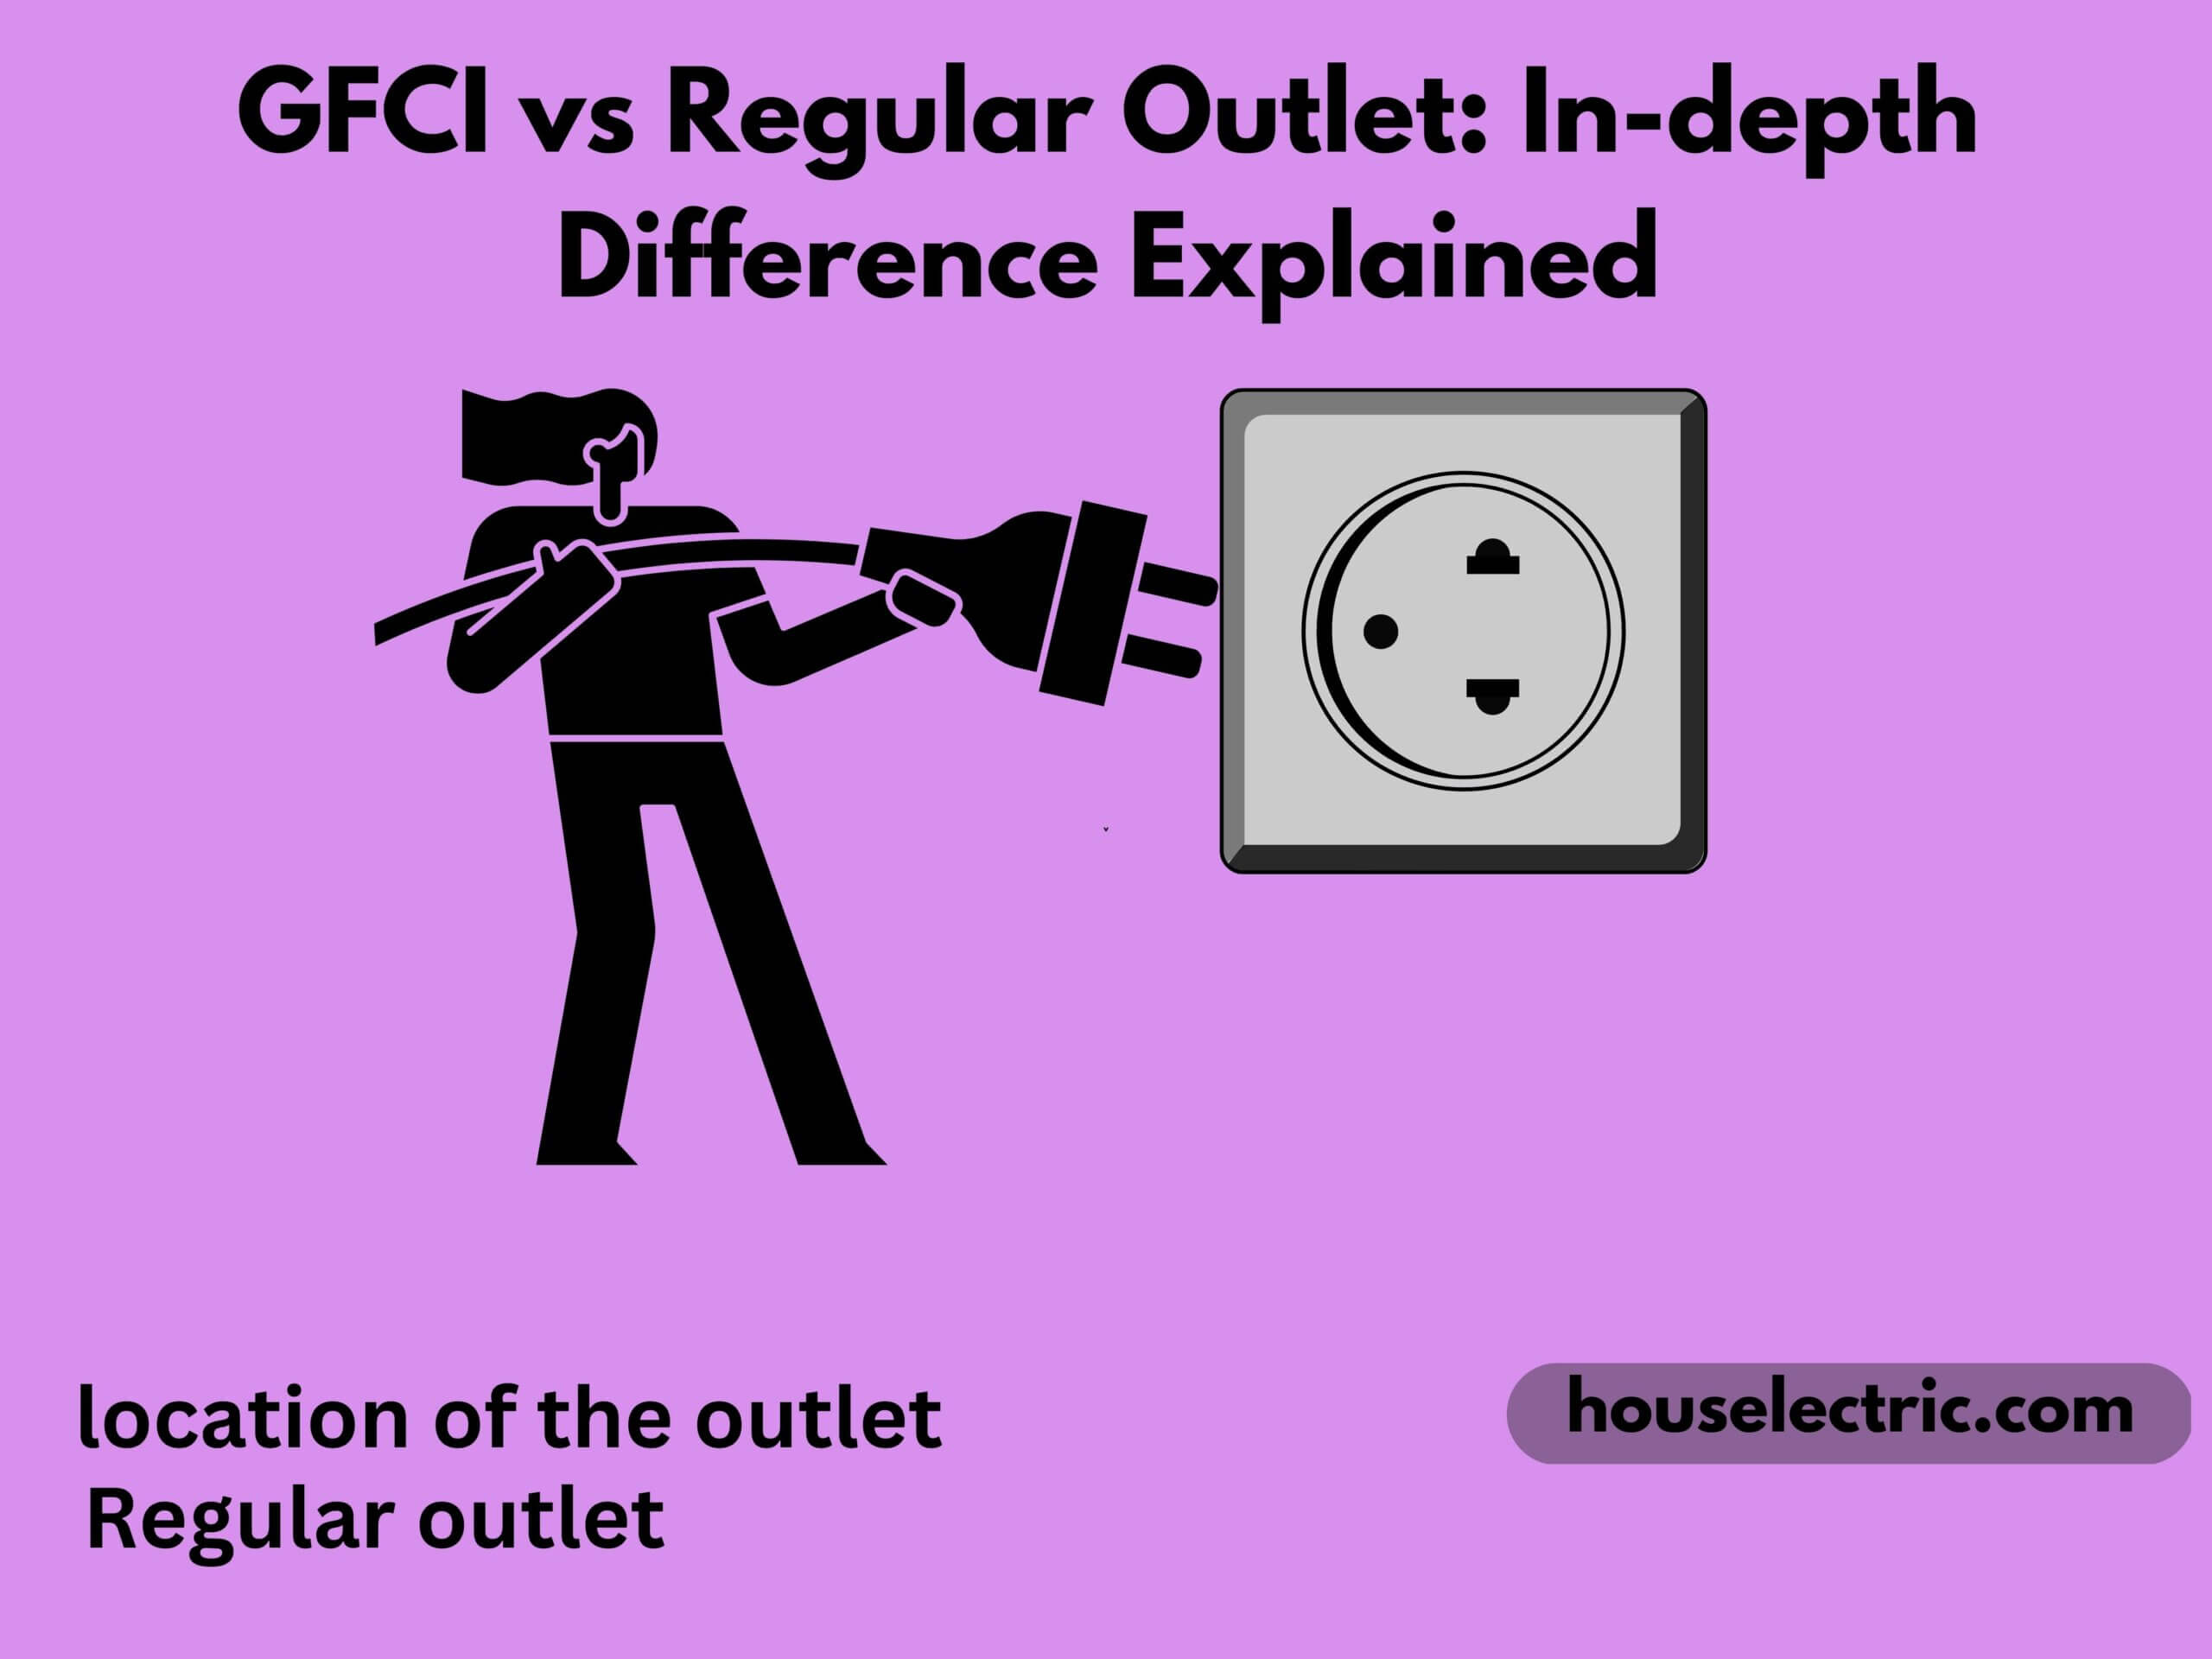 GFCI vs Regular Outlet